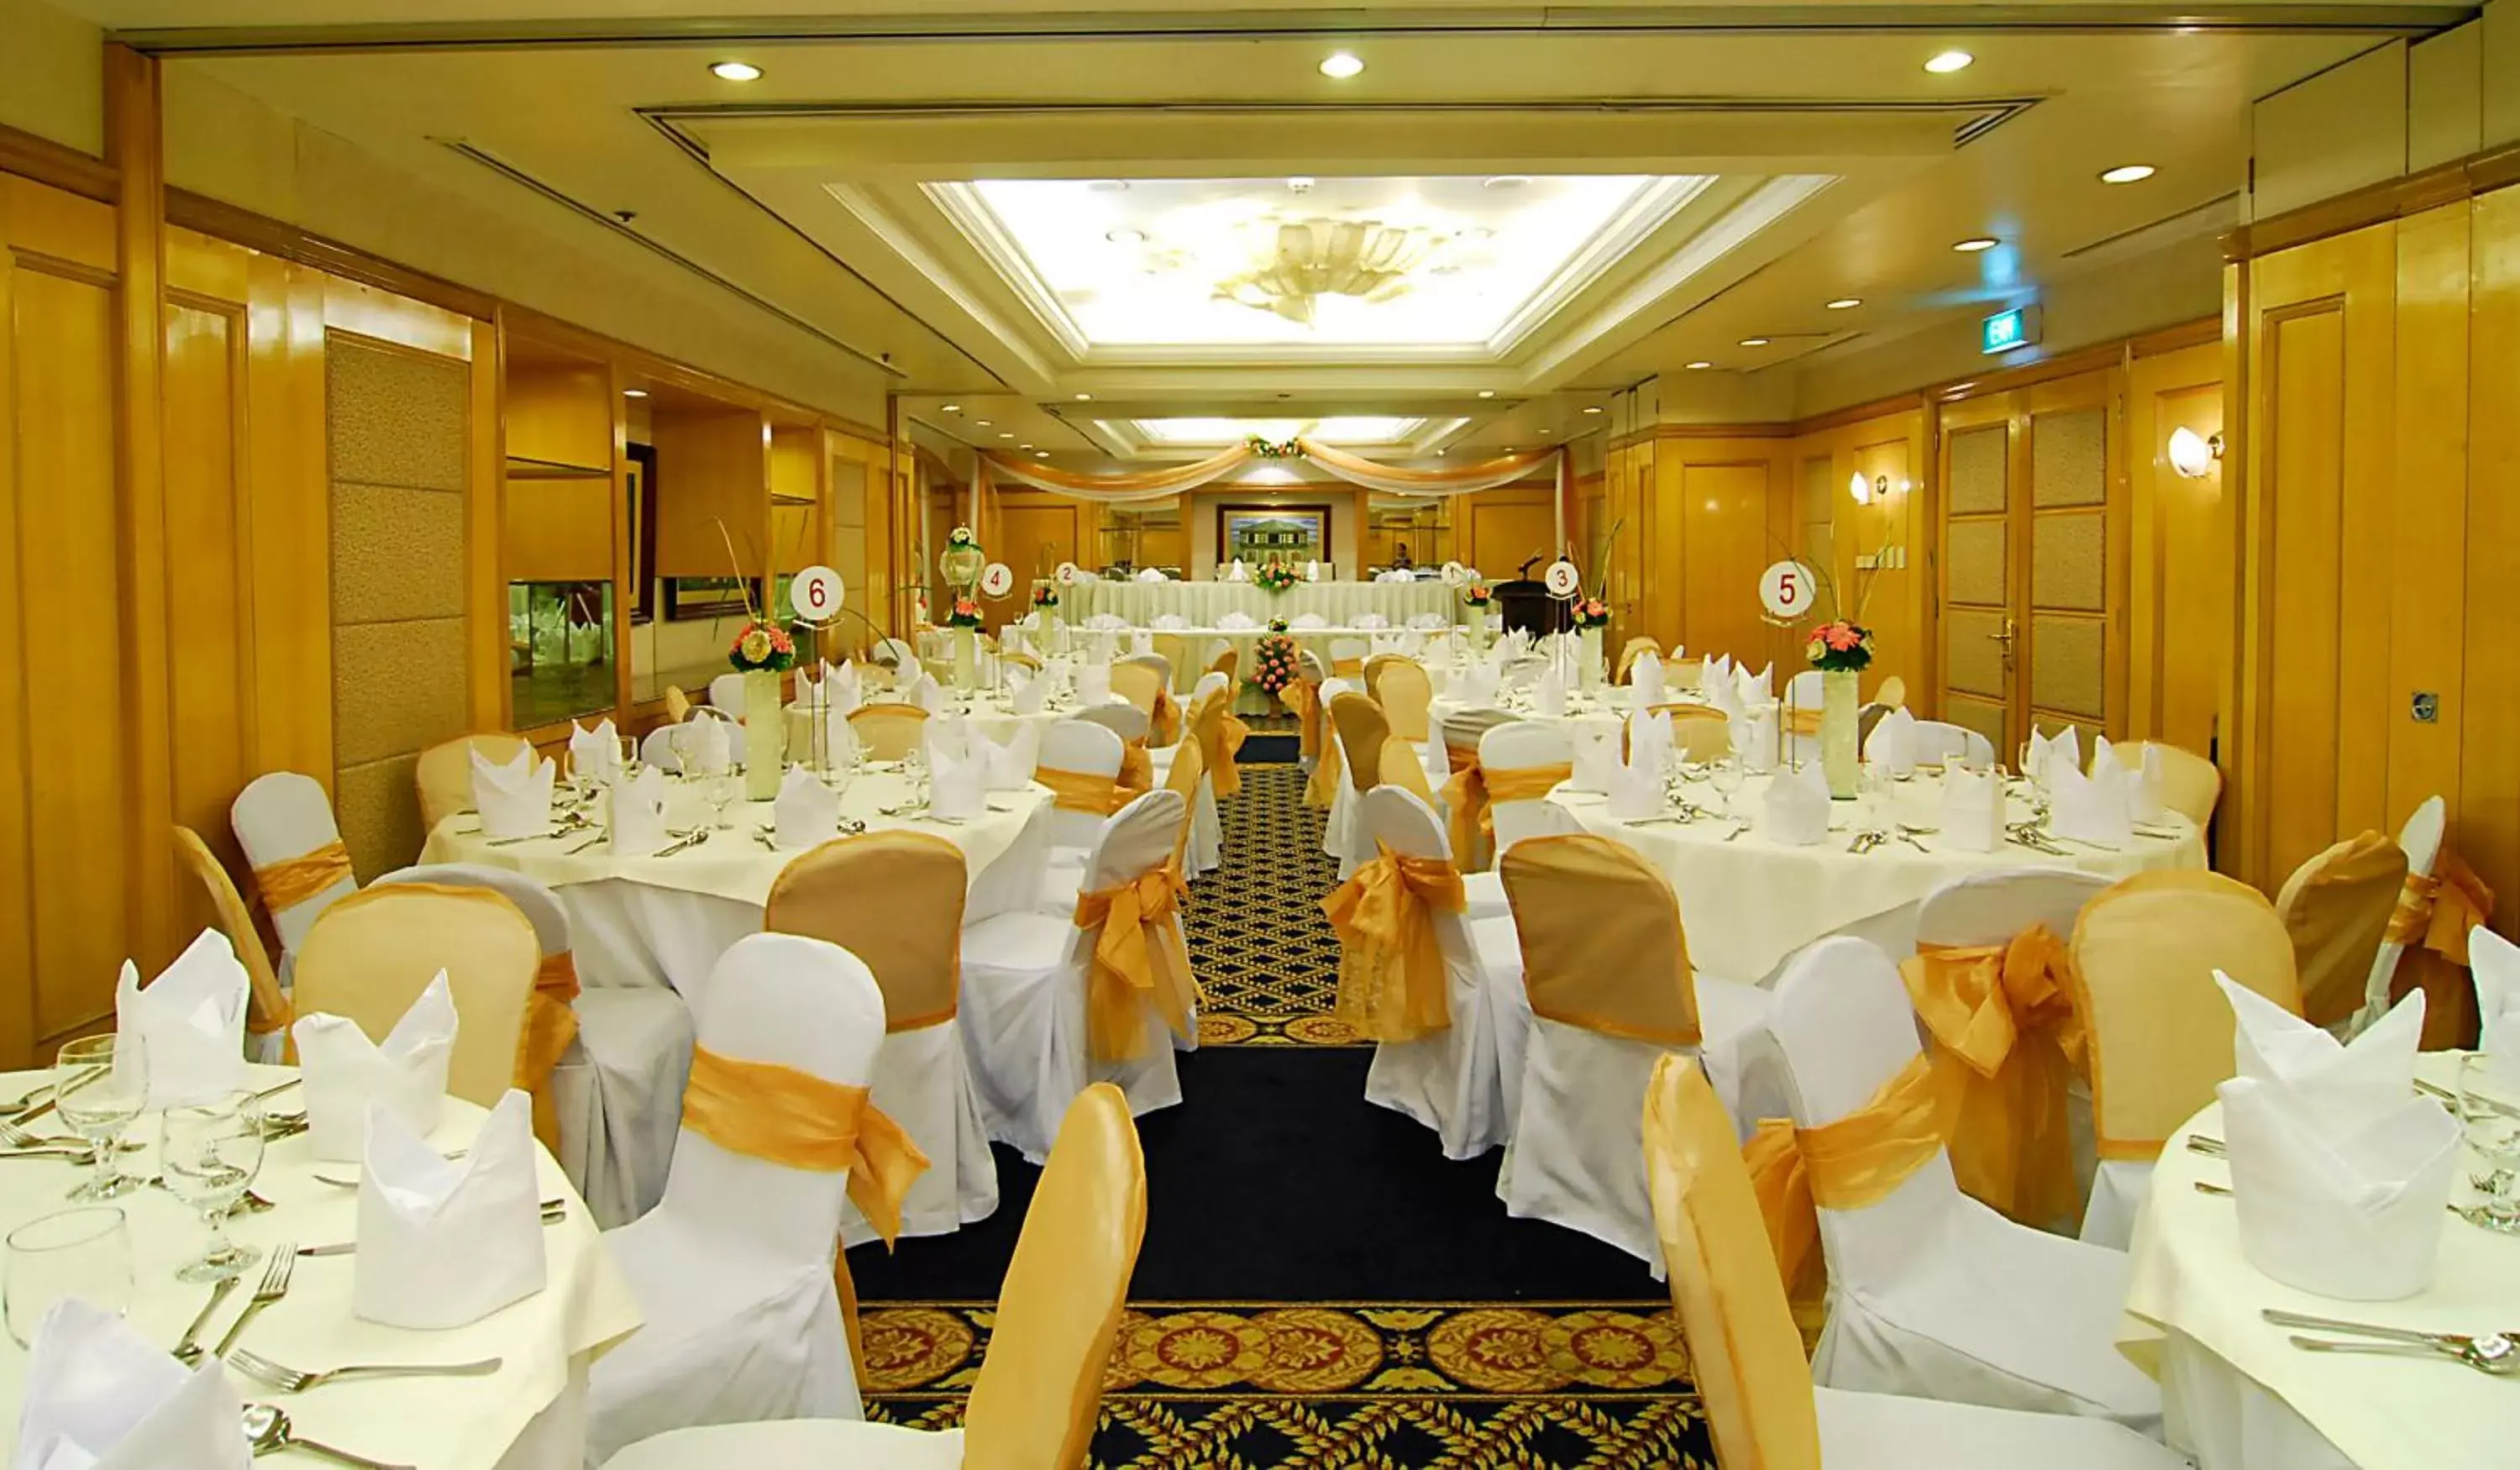 Banquet/Function facilities, Banquet Facilities in Richmonde Hotel Ortigas